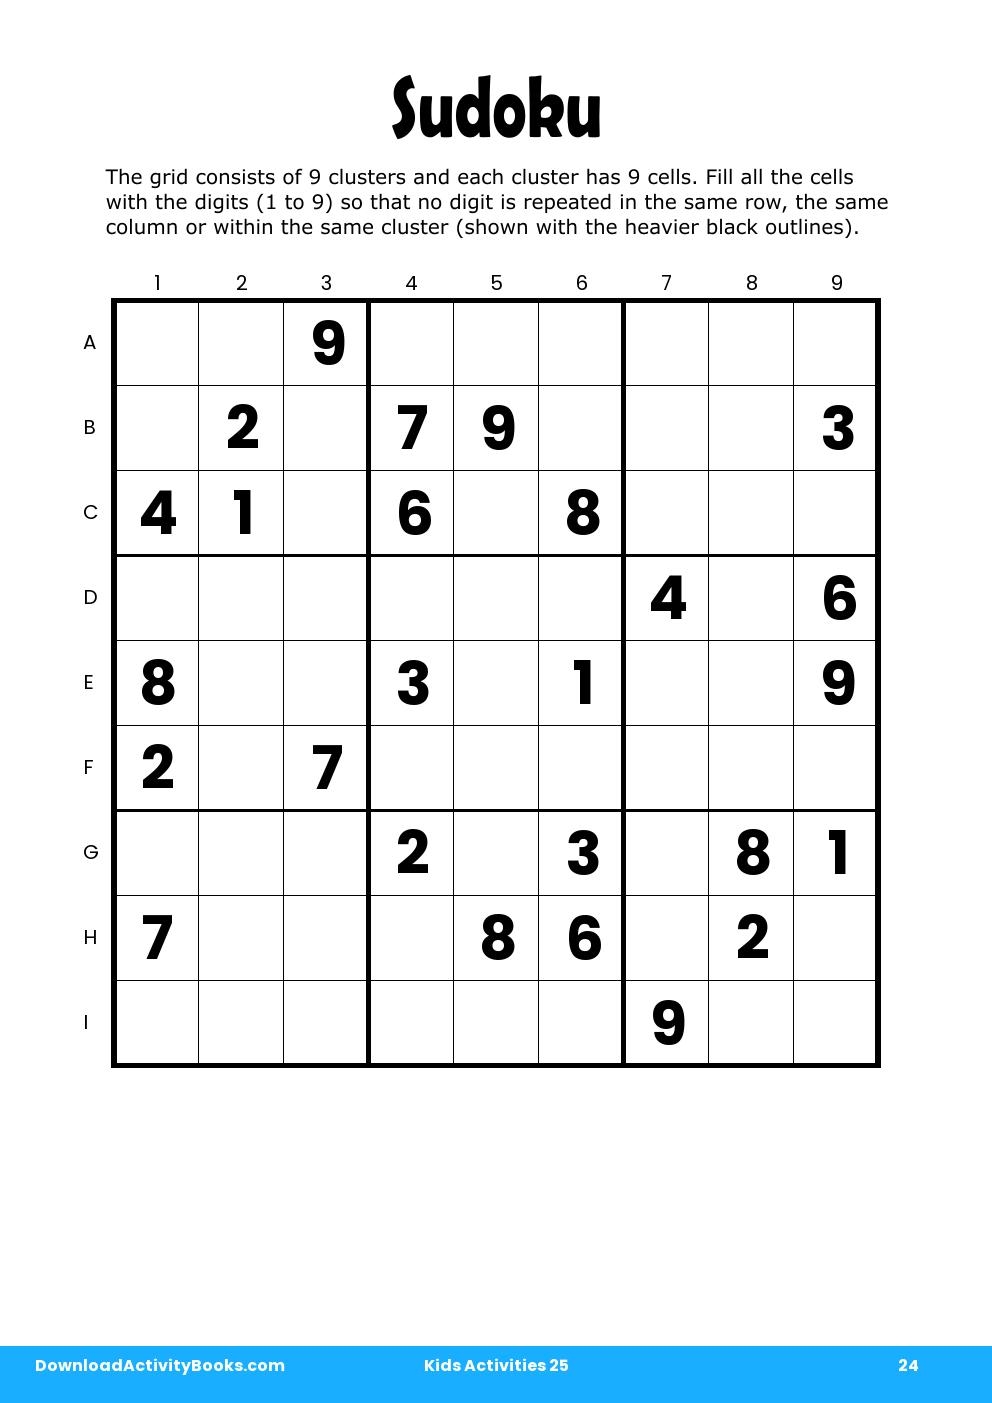 Sudoku in Kids Activities 25